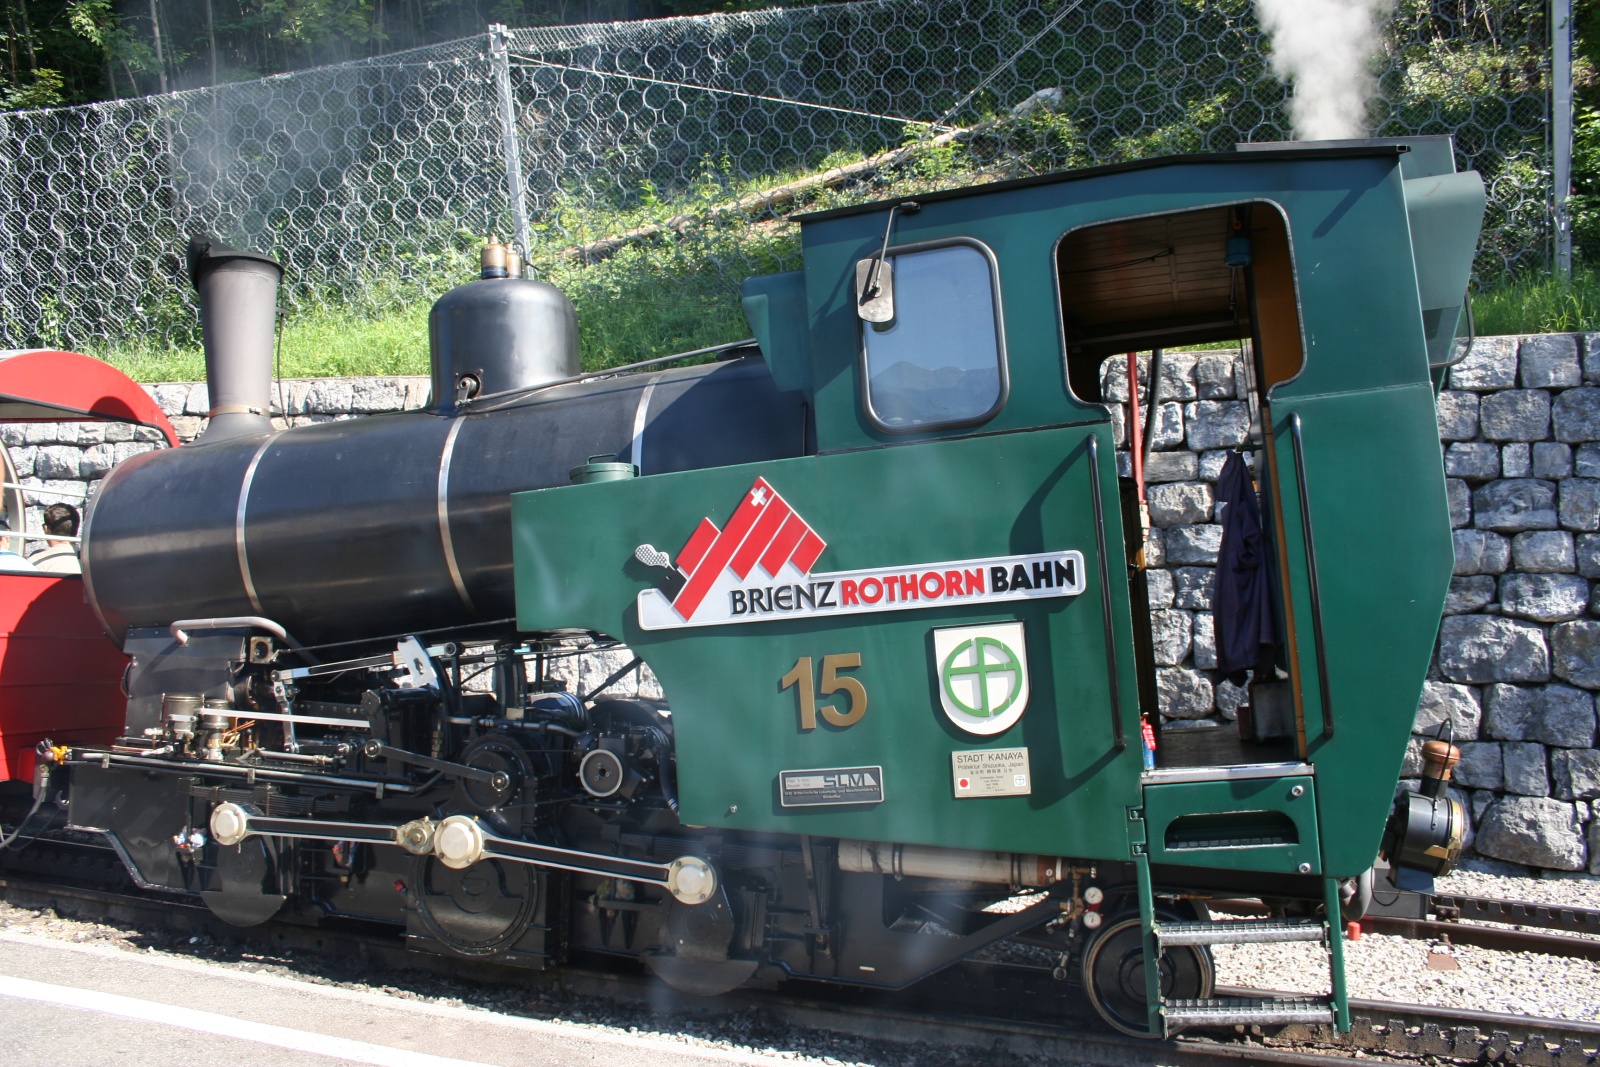 BRIENZ - Fantastica ferrovia in mezzo al verde della montagna